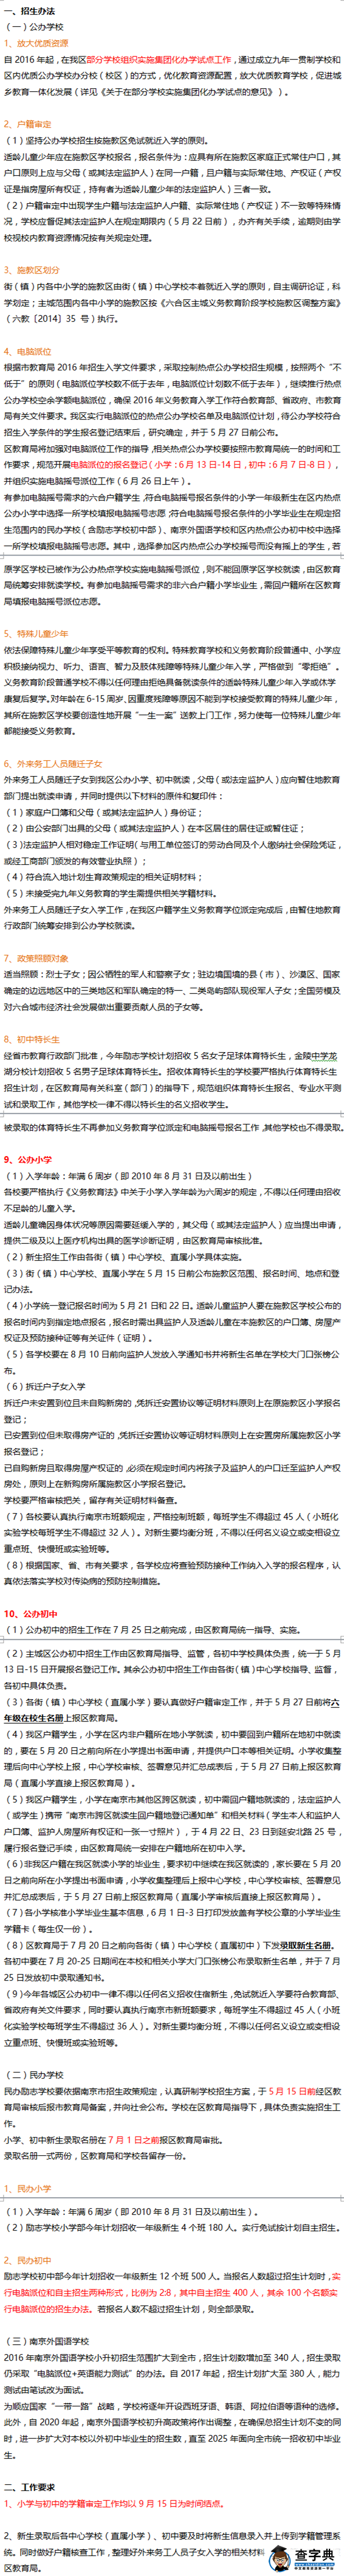 2016年南京六合区小升初政策公布1